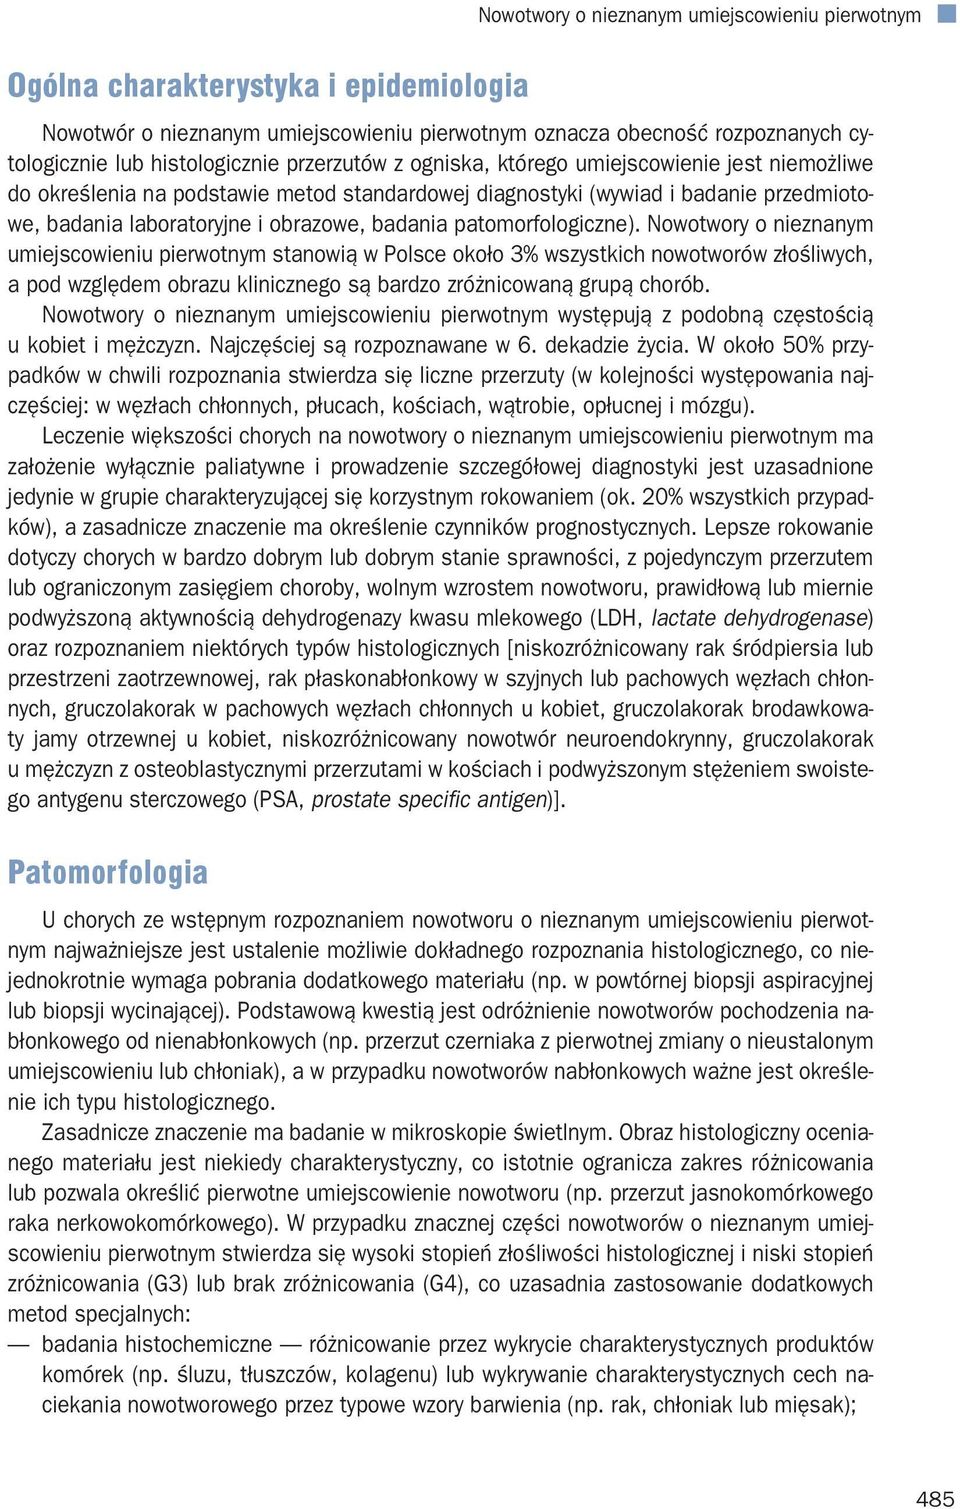 patomorfologiczne). Nowotwory o nieznanym umiejscowieniu pierwotnym stanowią w Polsce około 3% wszystkich nowotworów złośliwych, a pod względem obrazu klinicznego są bardzo zróżnicowaną grupą chorób.